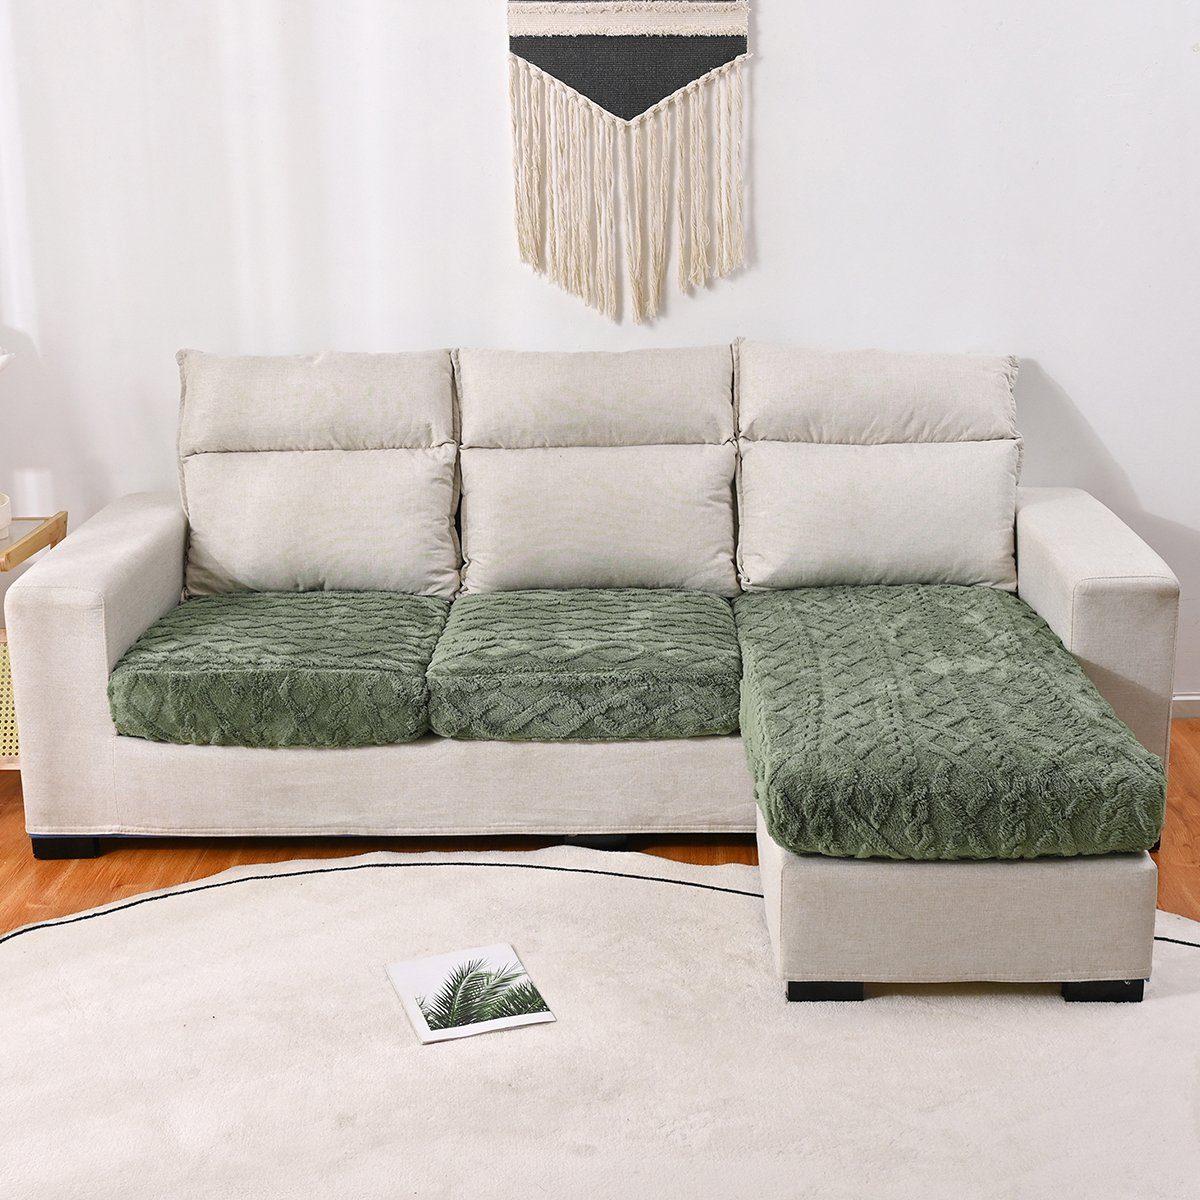 HOMEIDEAS, L elastisch, Form Armeegrün Sofabezug überzug Couch Sofahusse,